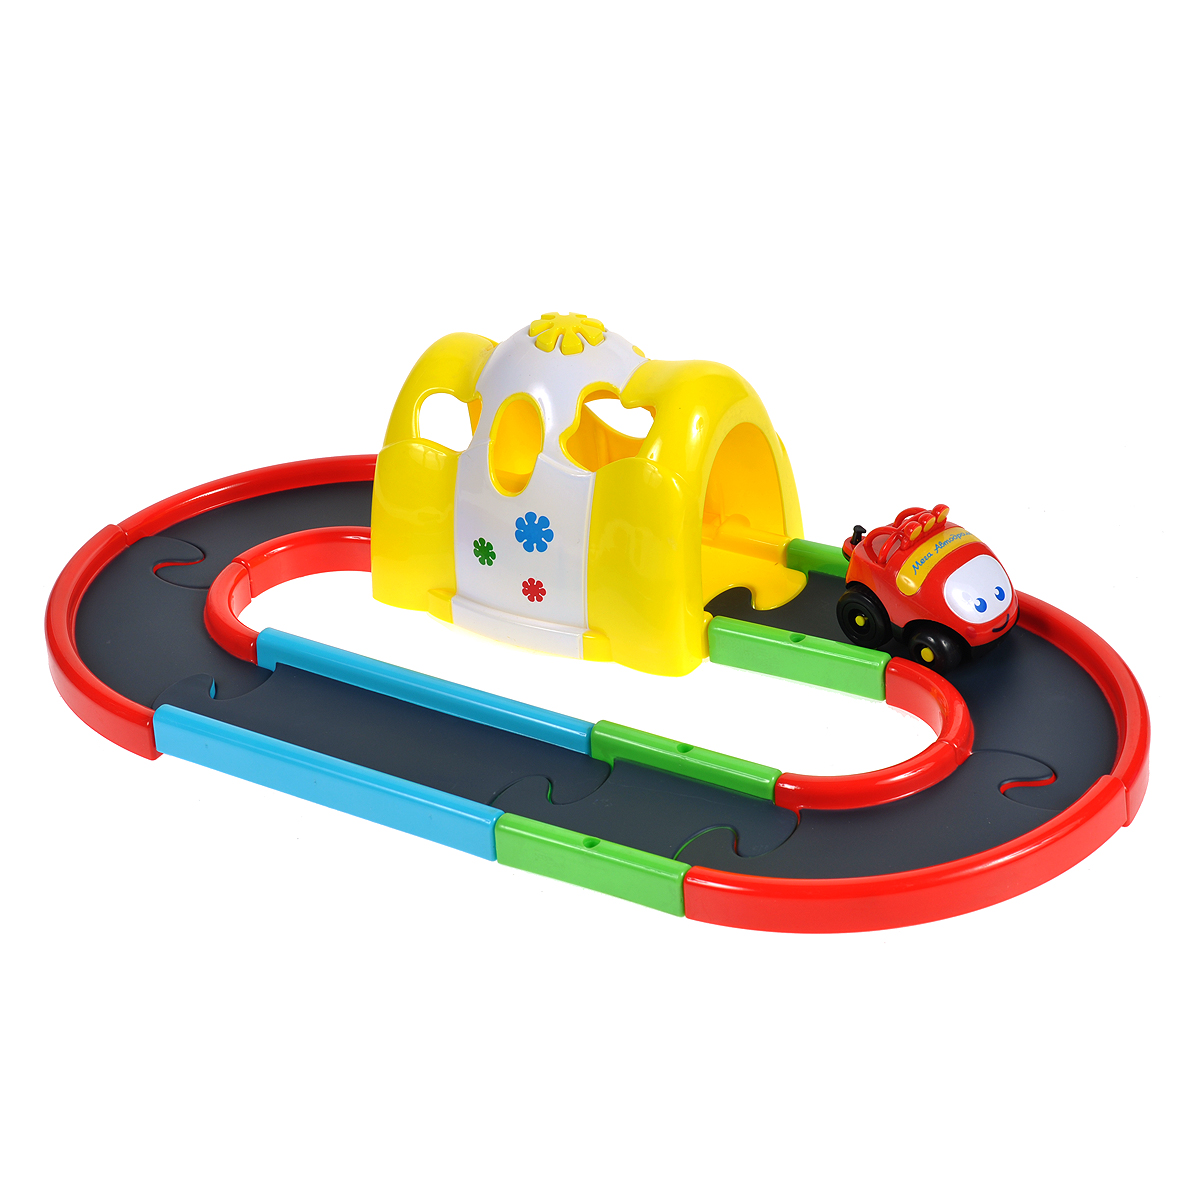 Детский игровой набор супер-трек «Туннель» со звуковыми и световыми эффектами и с машинкой на батарейках / 925856R